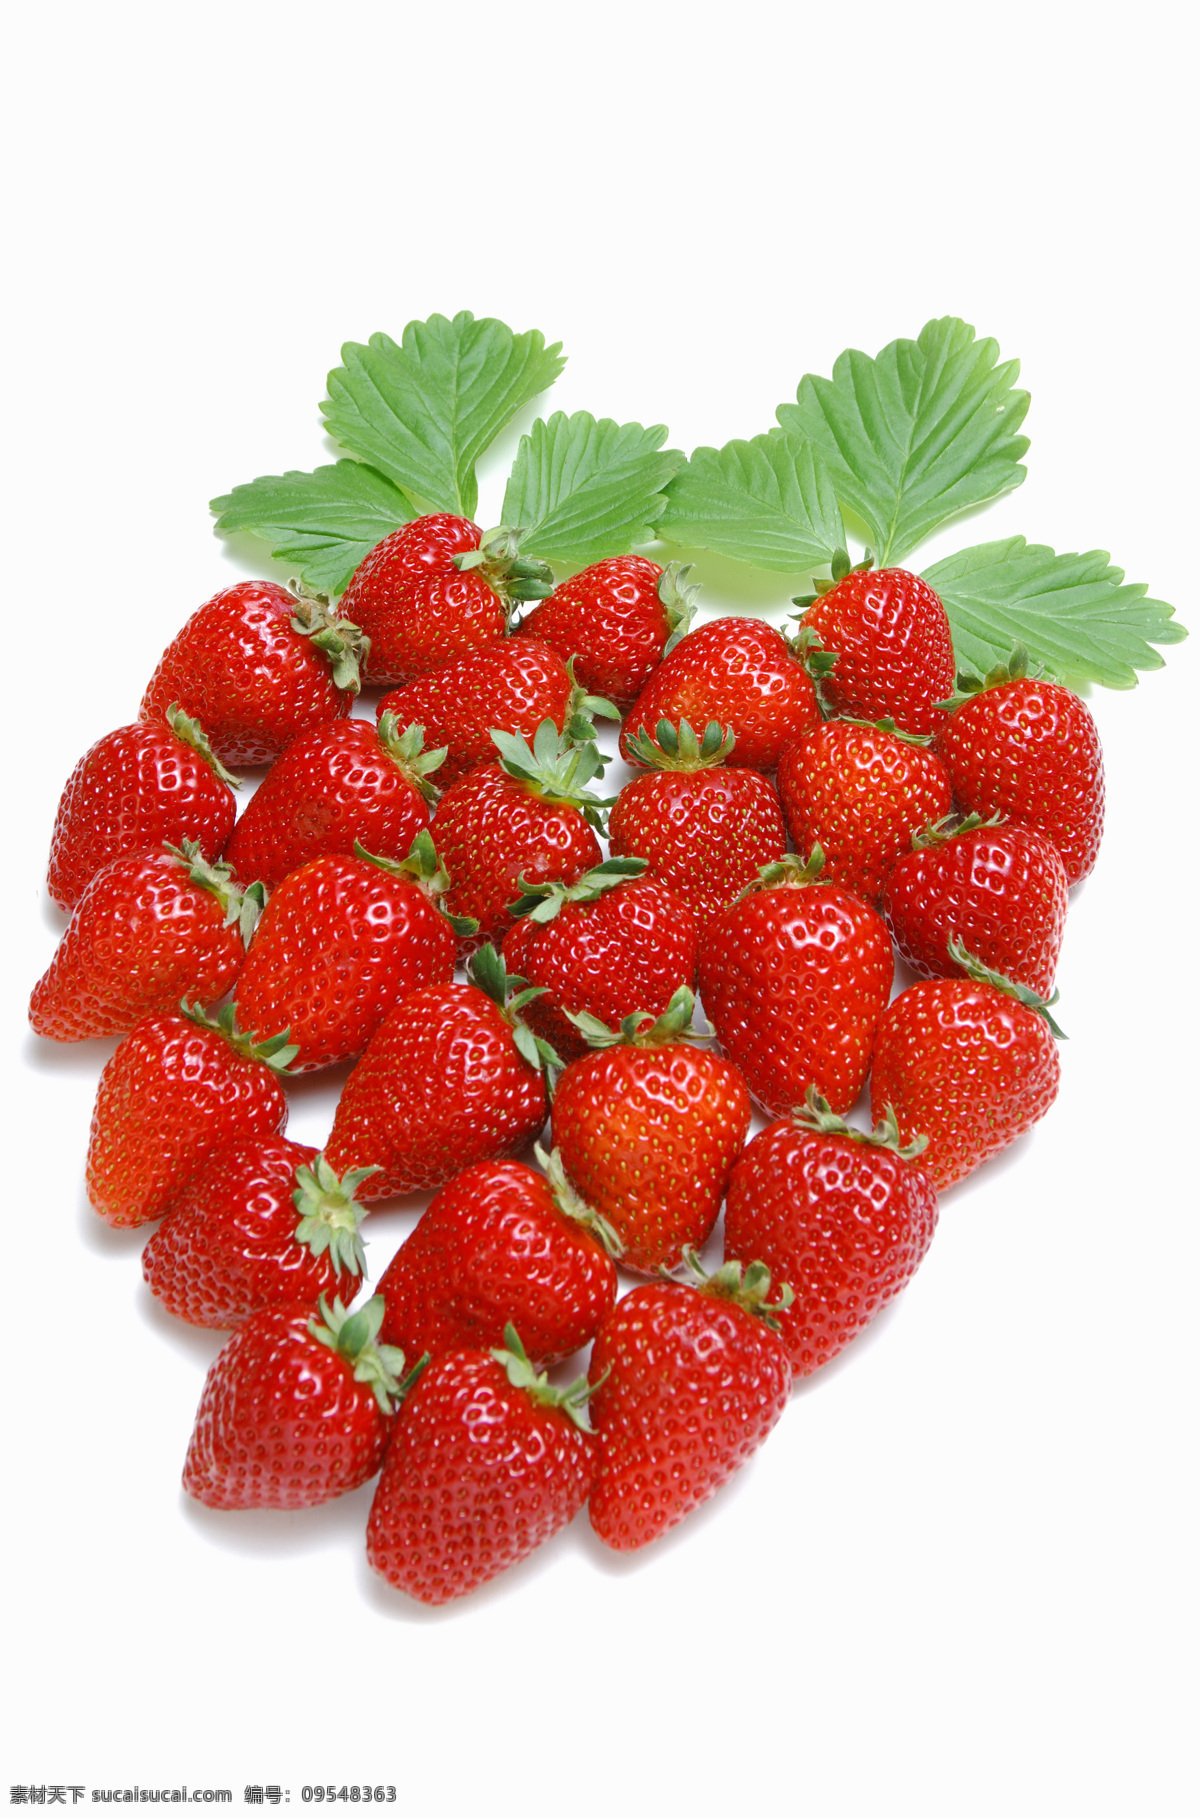 红色 草莓 新鲜草莓 红色草莓 健康果实 绿色水果 有机食品 有机水果 新鲜水果 草莓高清图片 摄影素材 水果 水果蔬菜 美食文化 蔬菜图片 餐饮美食